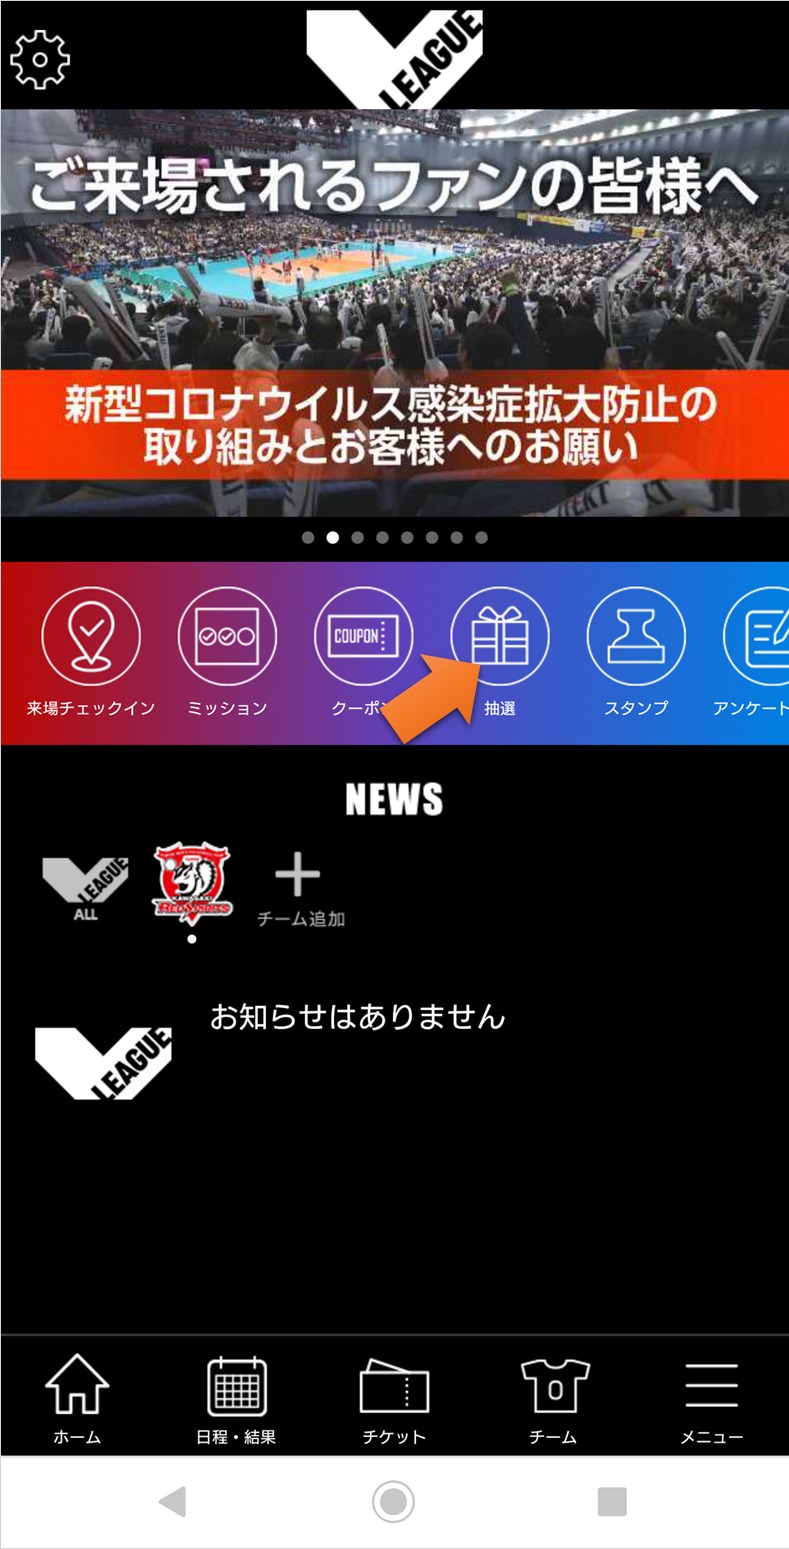 Vアプリ抽選参加方法について 富士通カワサキレッドスピリッツ